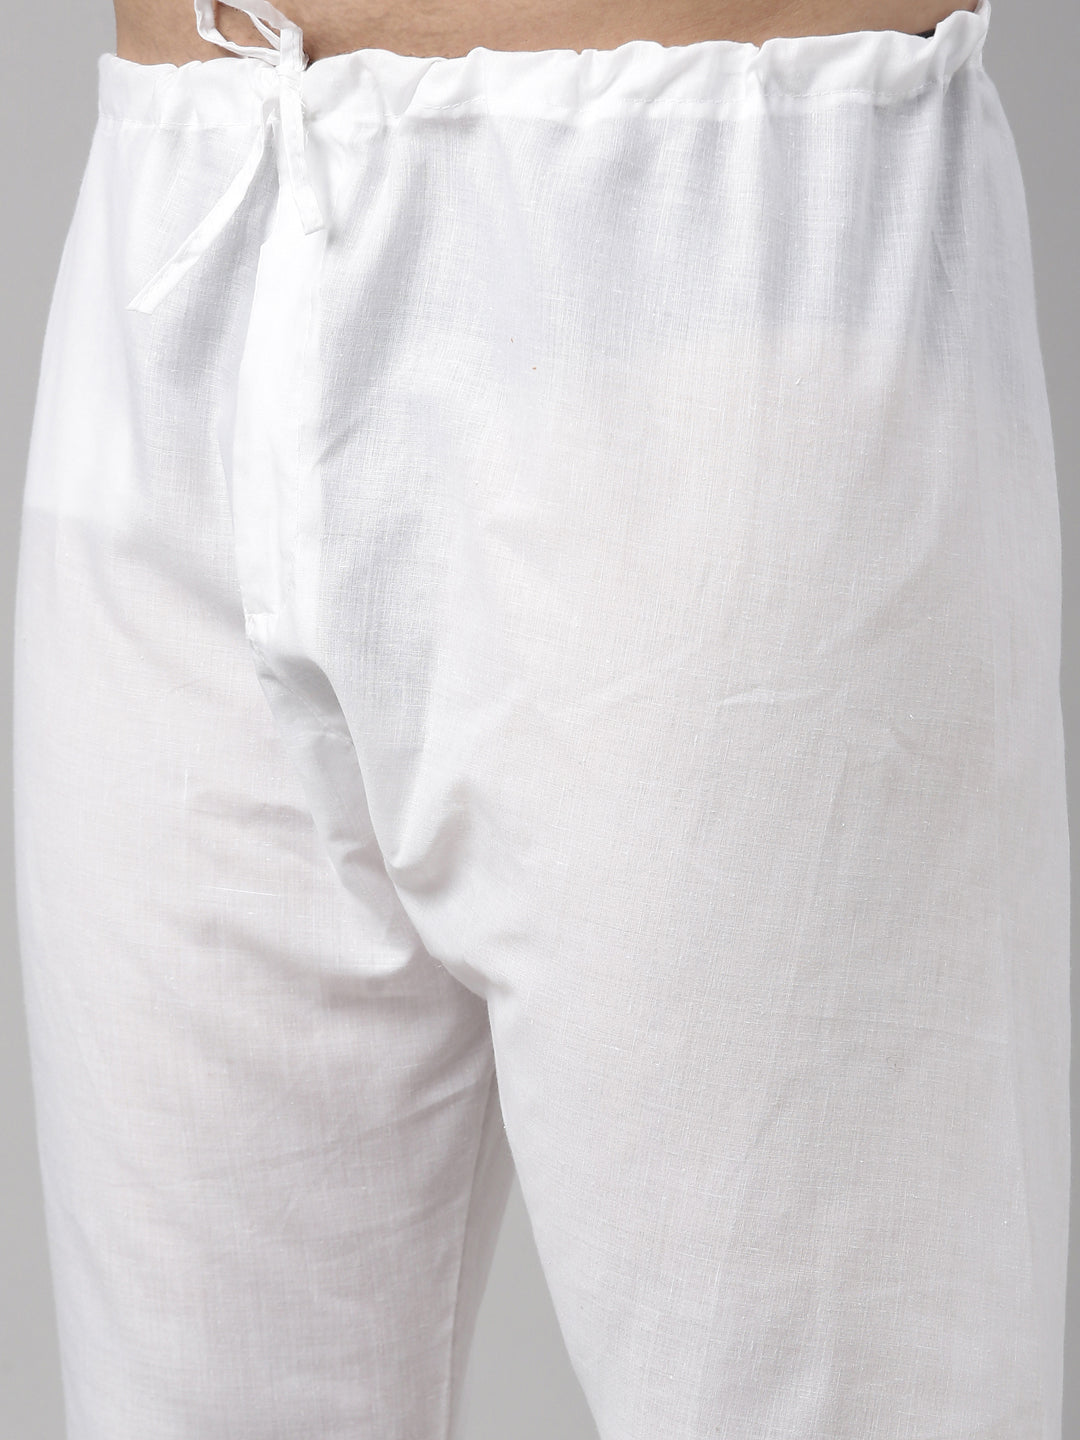 Buy Tattva Skin Color Cotton Long Kurta With Pyjamas 